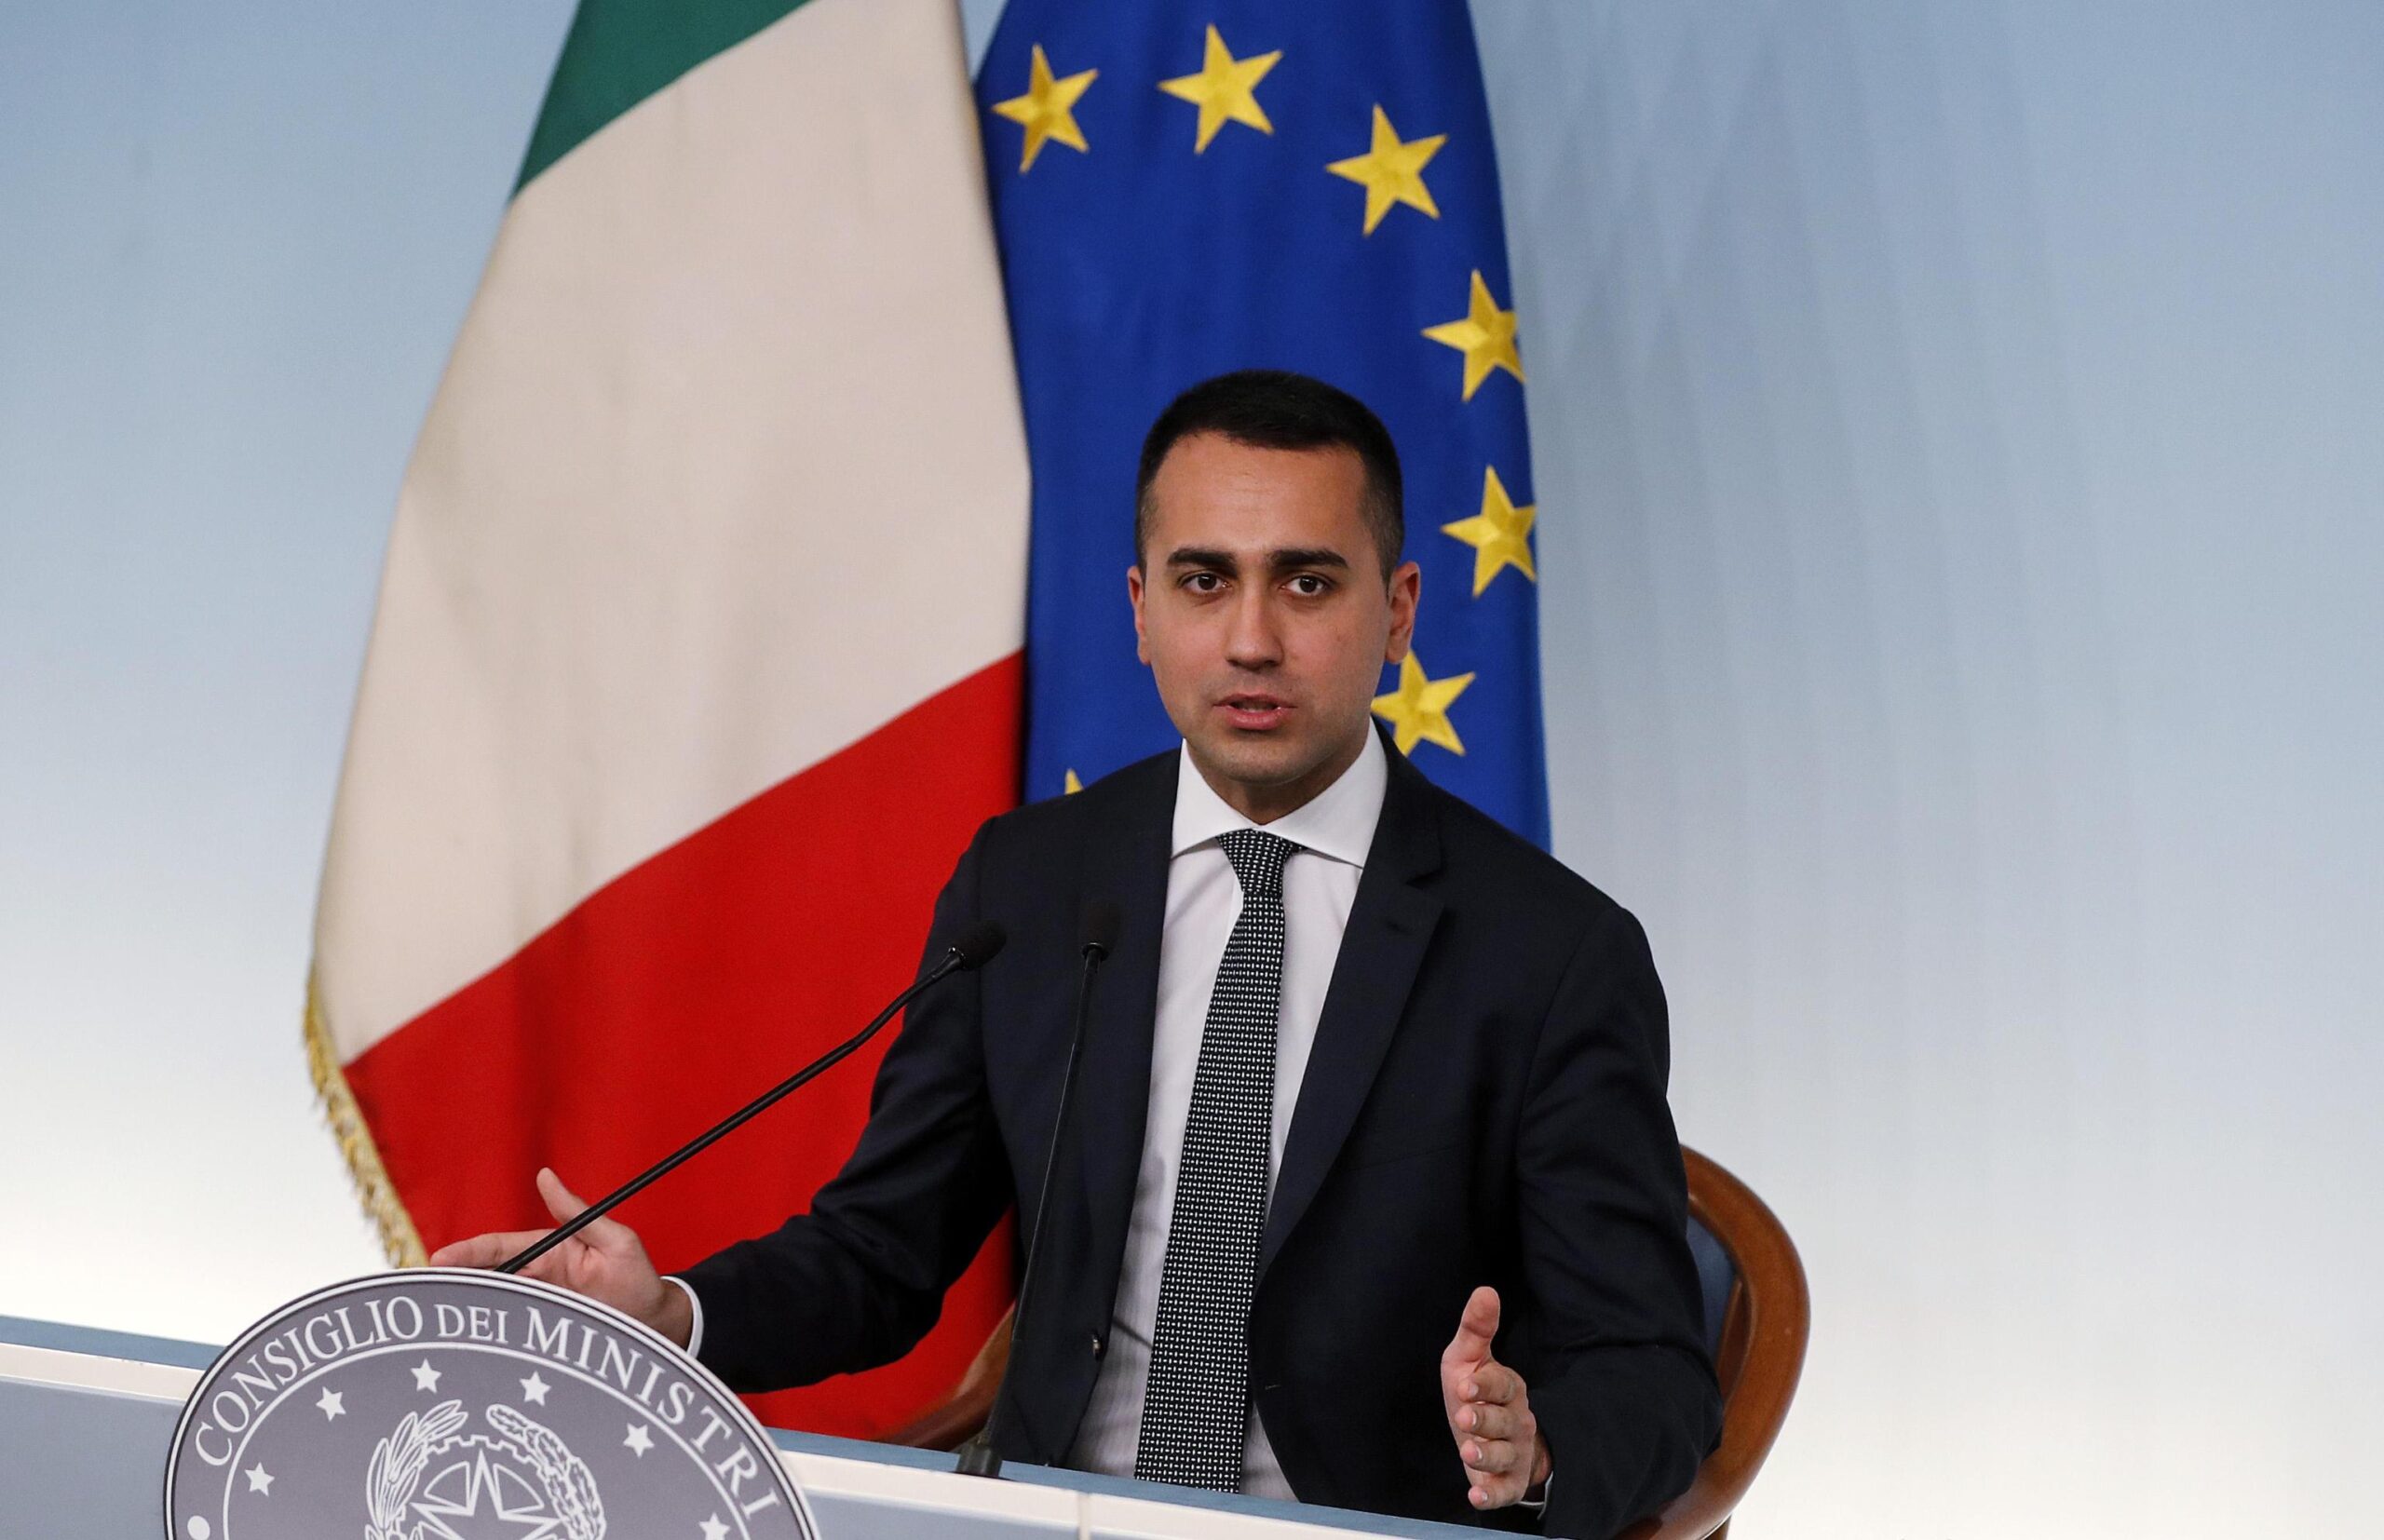 talian Deputy Premier Luigi Di Maio press conference